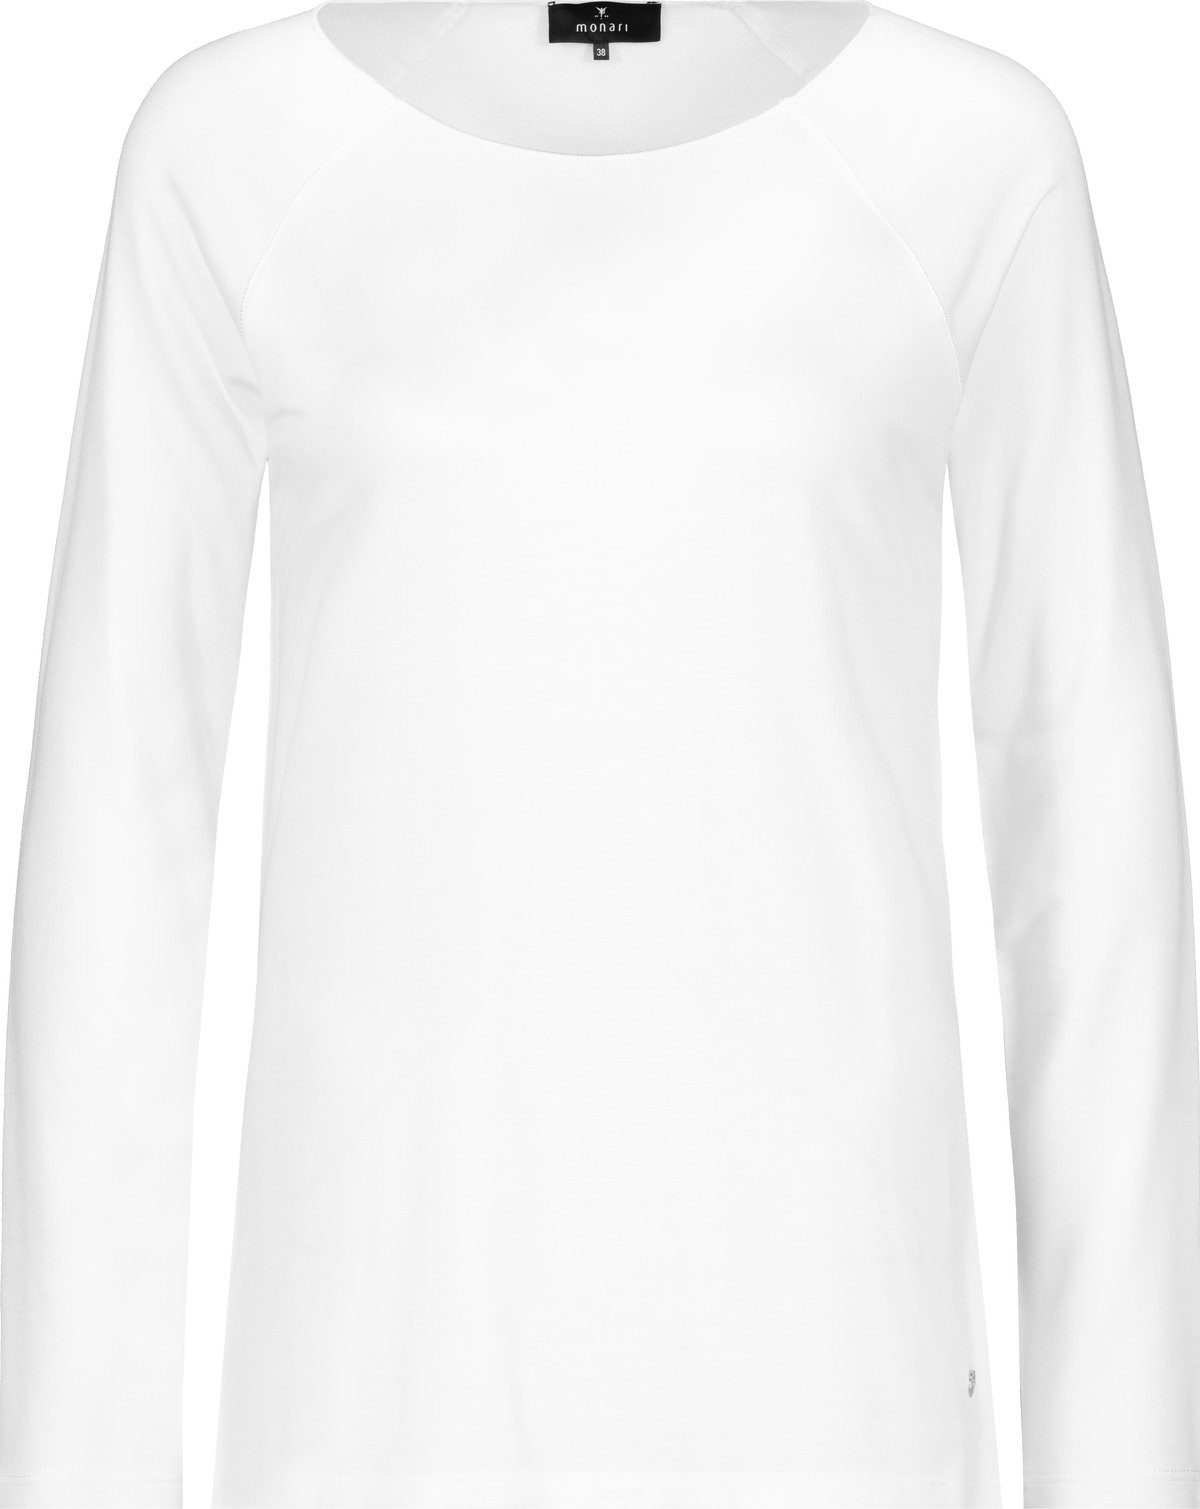 T-Shirt off-white Monari 102